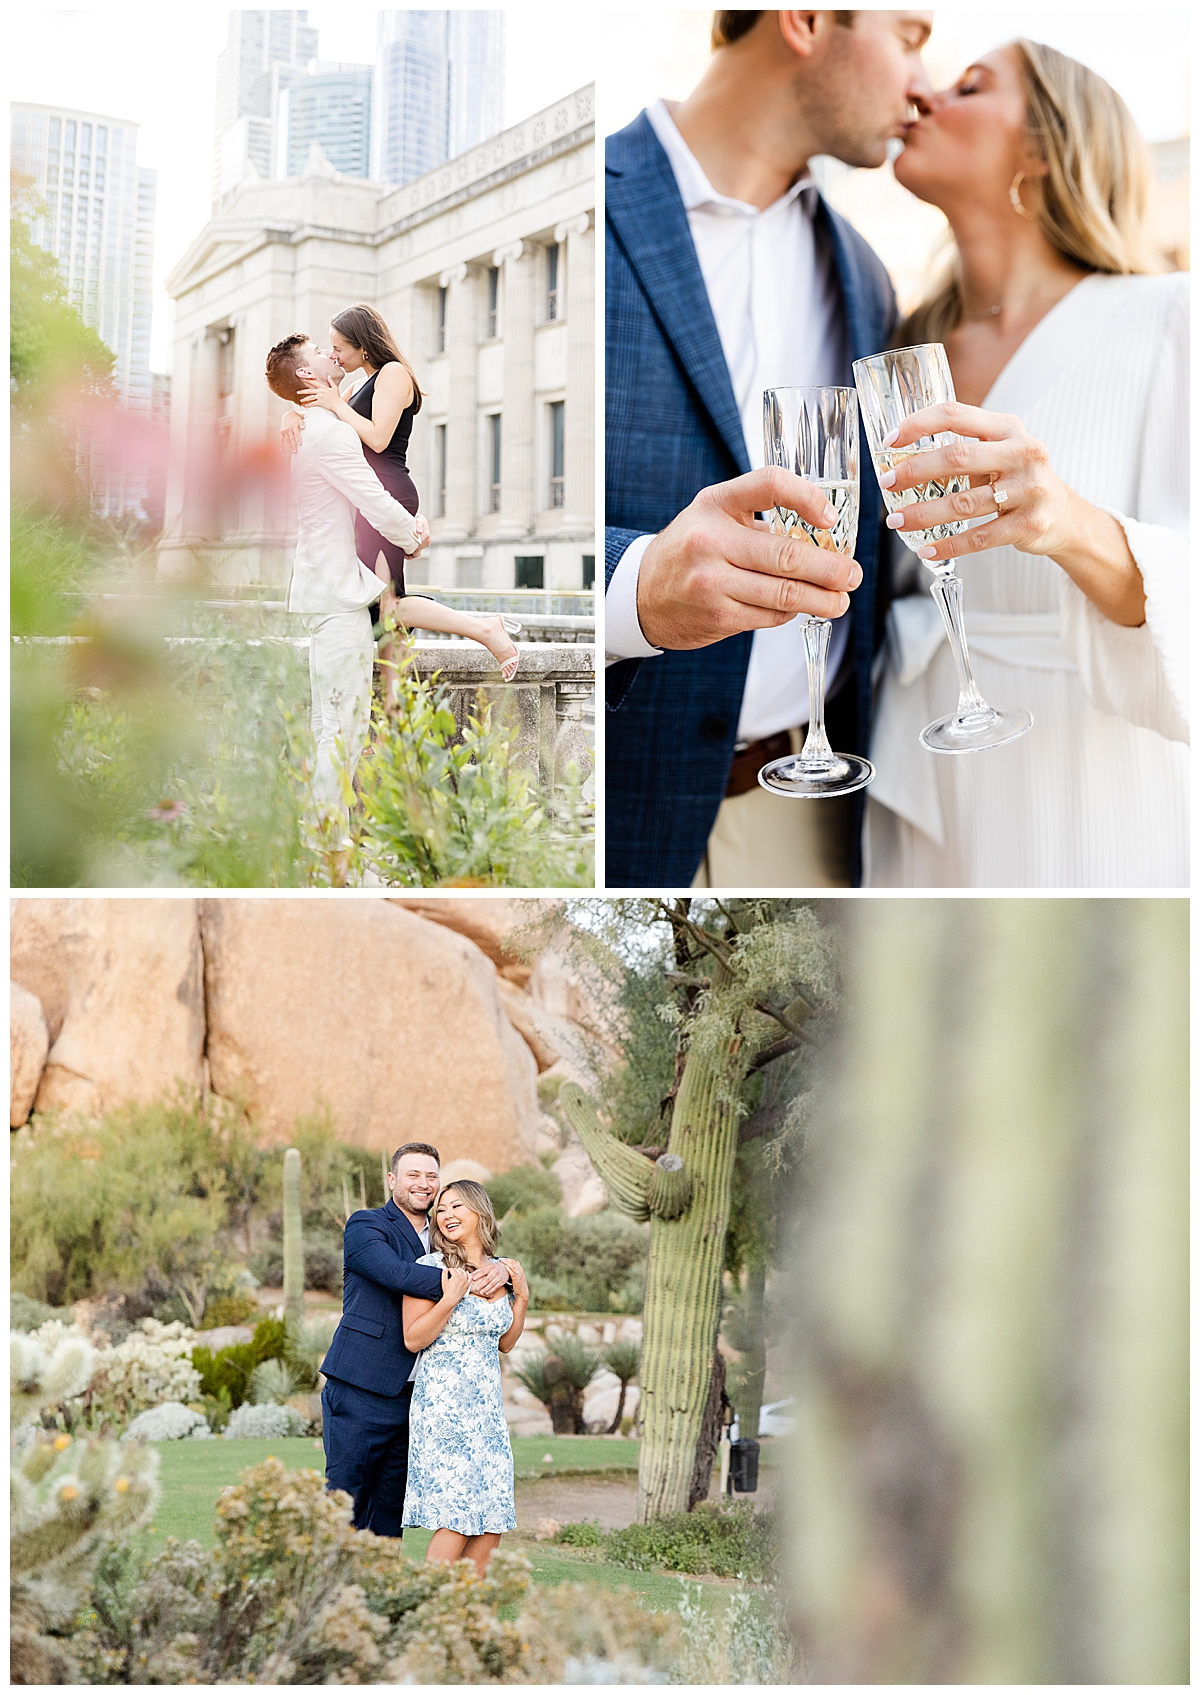 new couple engagement photoshoot